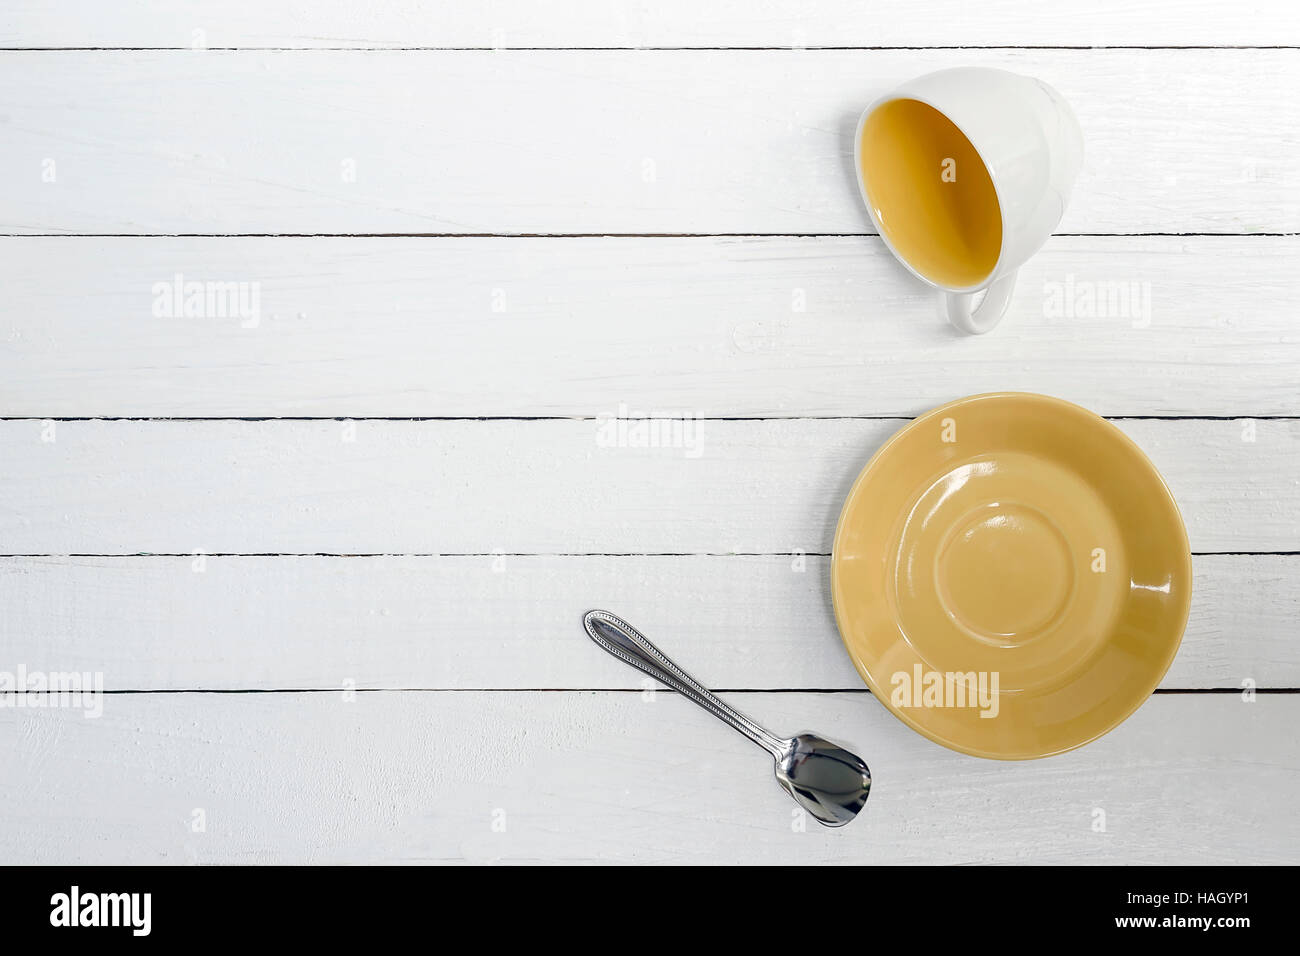 Tazza vuota, piattino e cucchiaio su sfondo di legno,vista dall'alto. Foto Stock